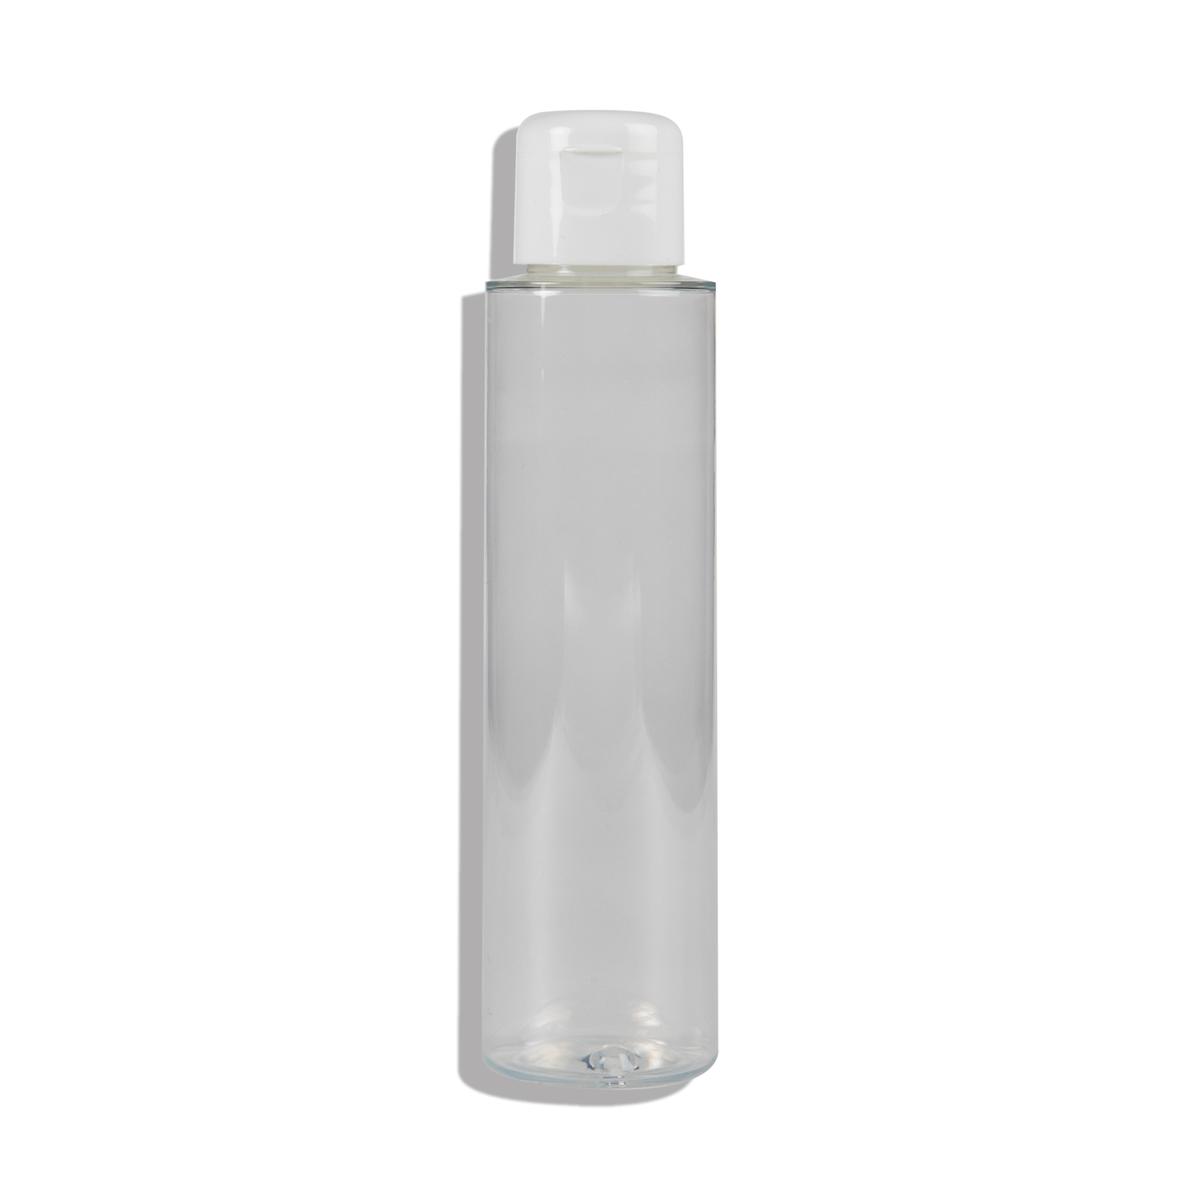 Flacon PET transparent avec capsule service blanche 100 ml